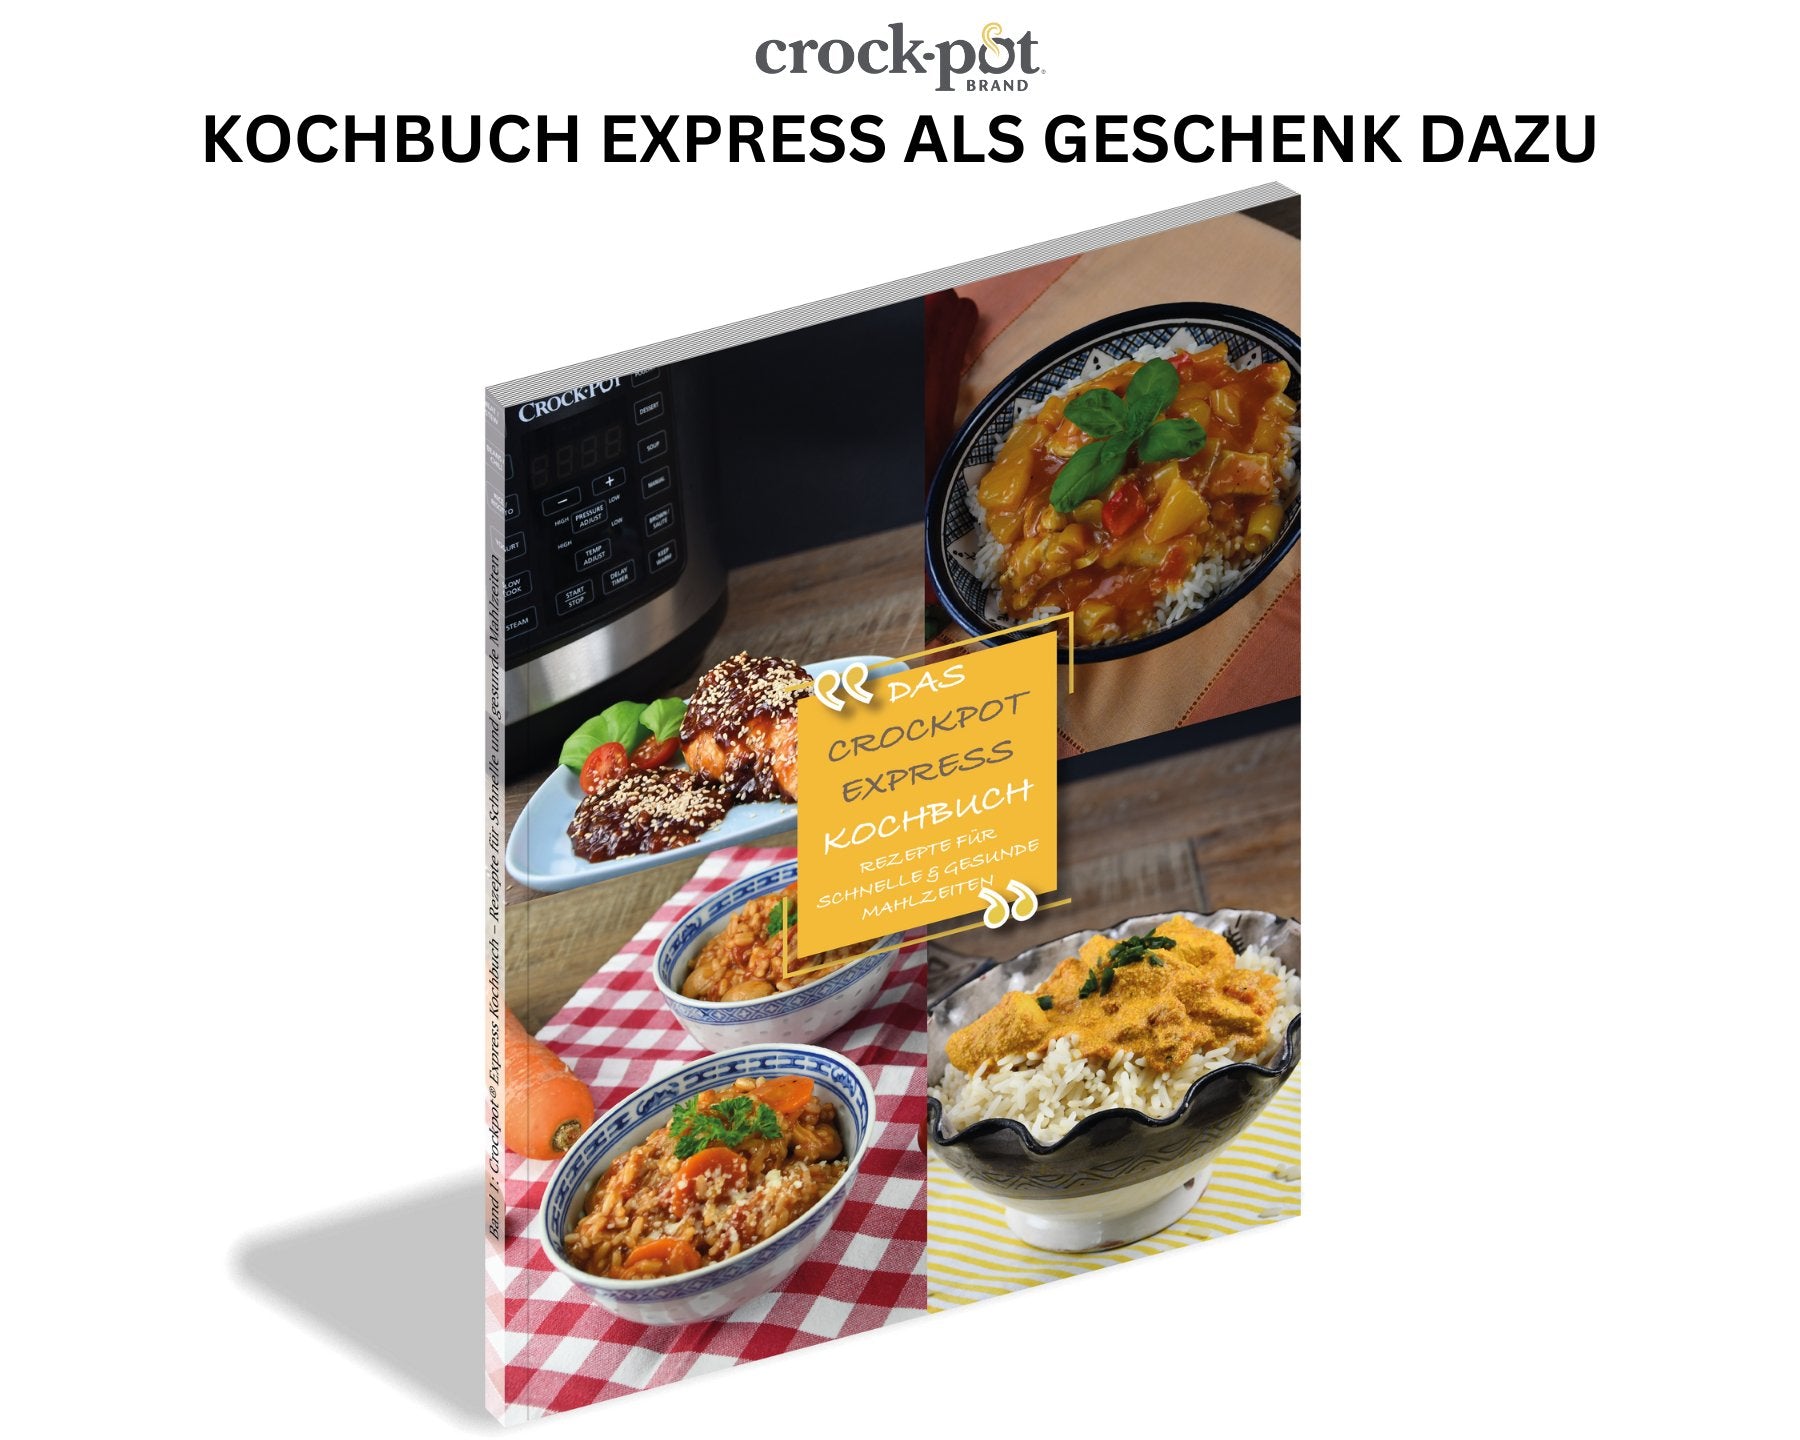 Crockpot Express, 5.6 L Multi-Cooker - kitchen-more.ch, Multifunktionsgerät, kostenloser Versand in der ganzen Schweiz